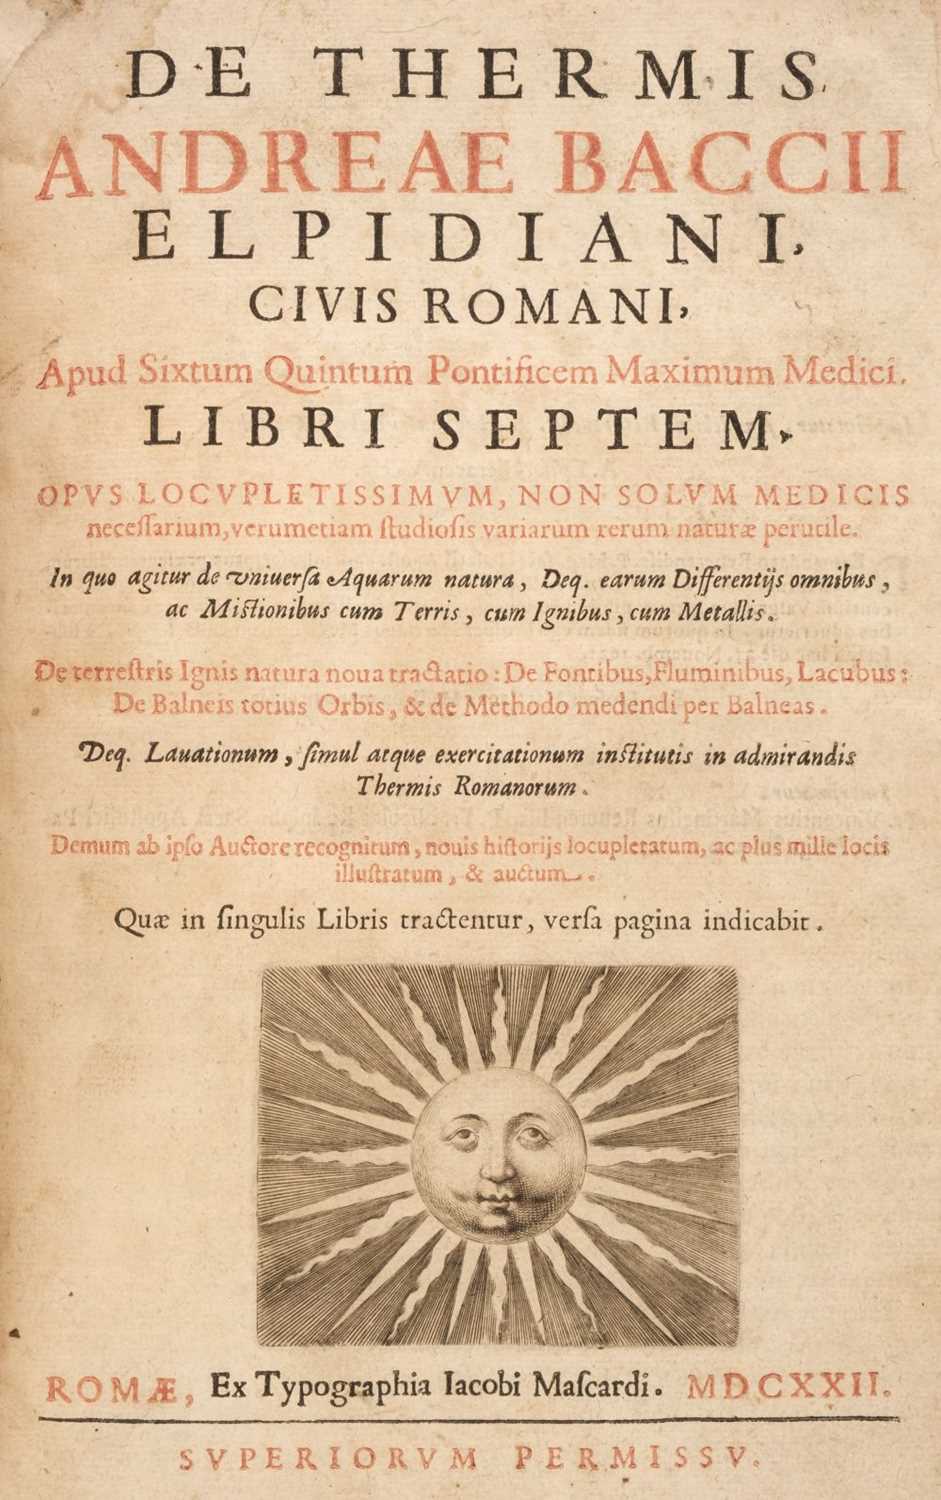 Lot 199 - Bacci (Andrea). De thermis libri septem, 3rd edition, 1622